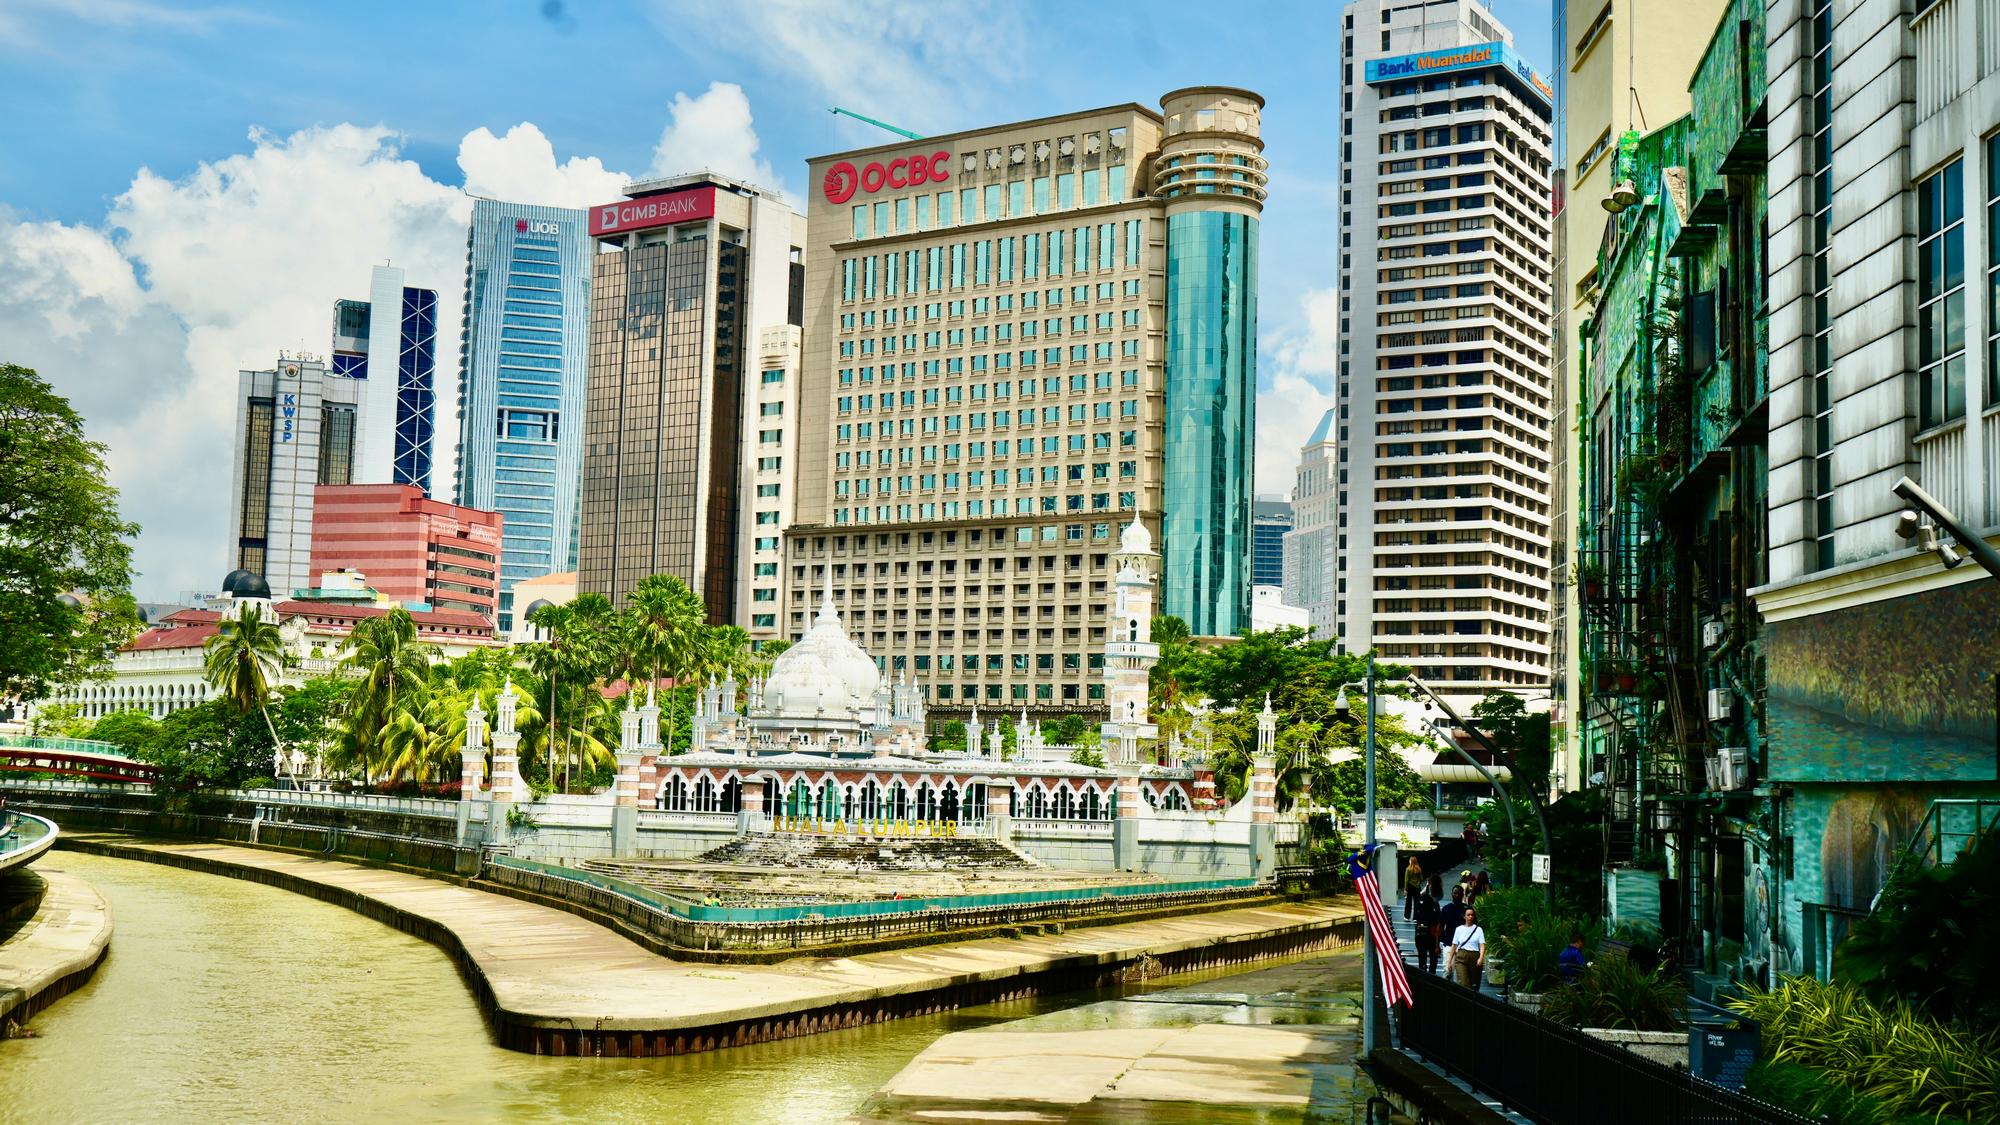 Kuala Lumpur: Muddy Confluence